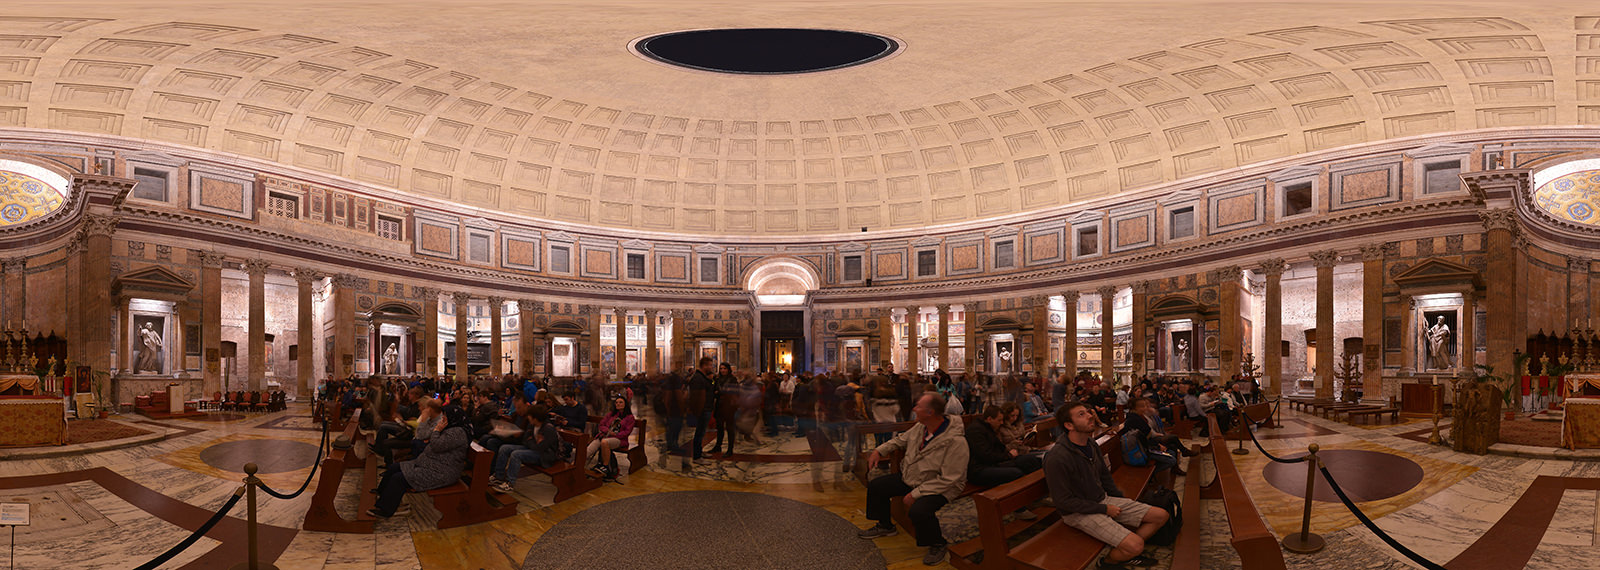 Inside Pantheon, Roma - Virtual tour